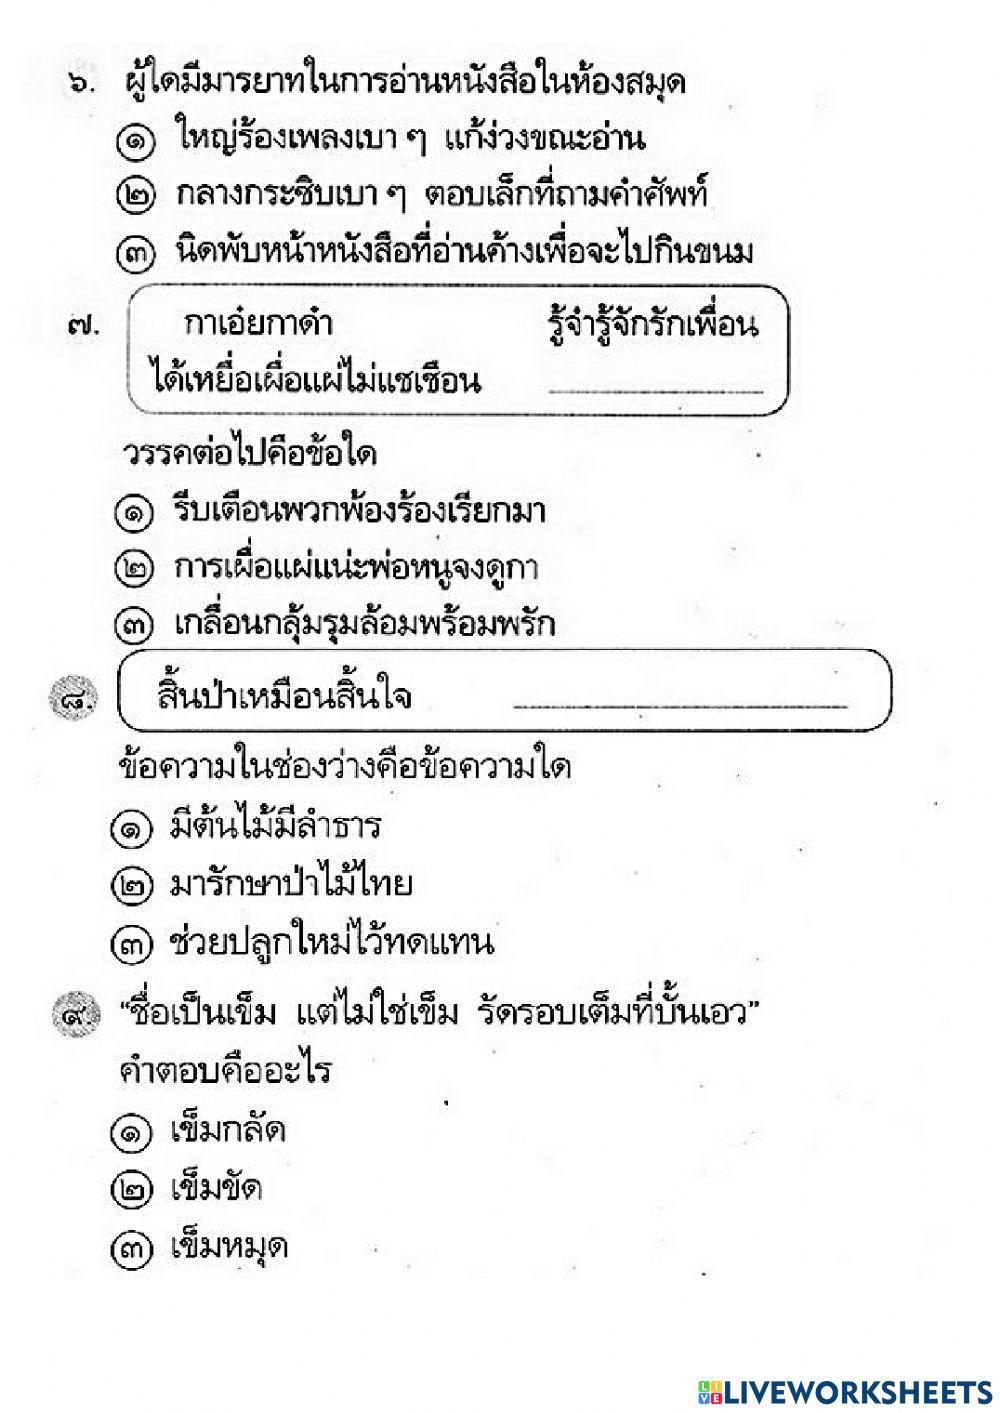 วรรณคดี (หลักภาษาไทย)